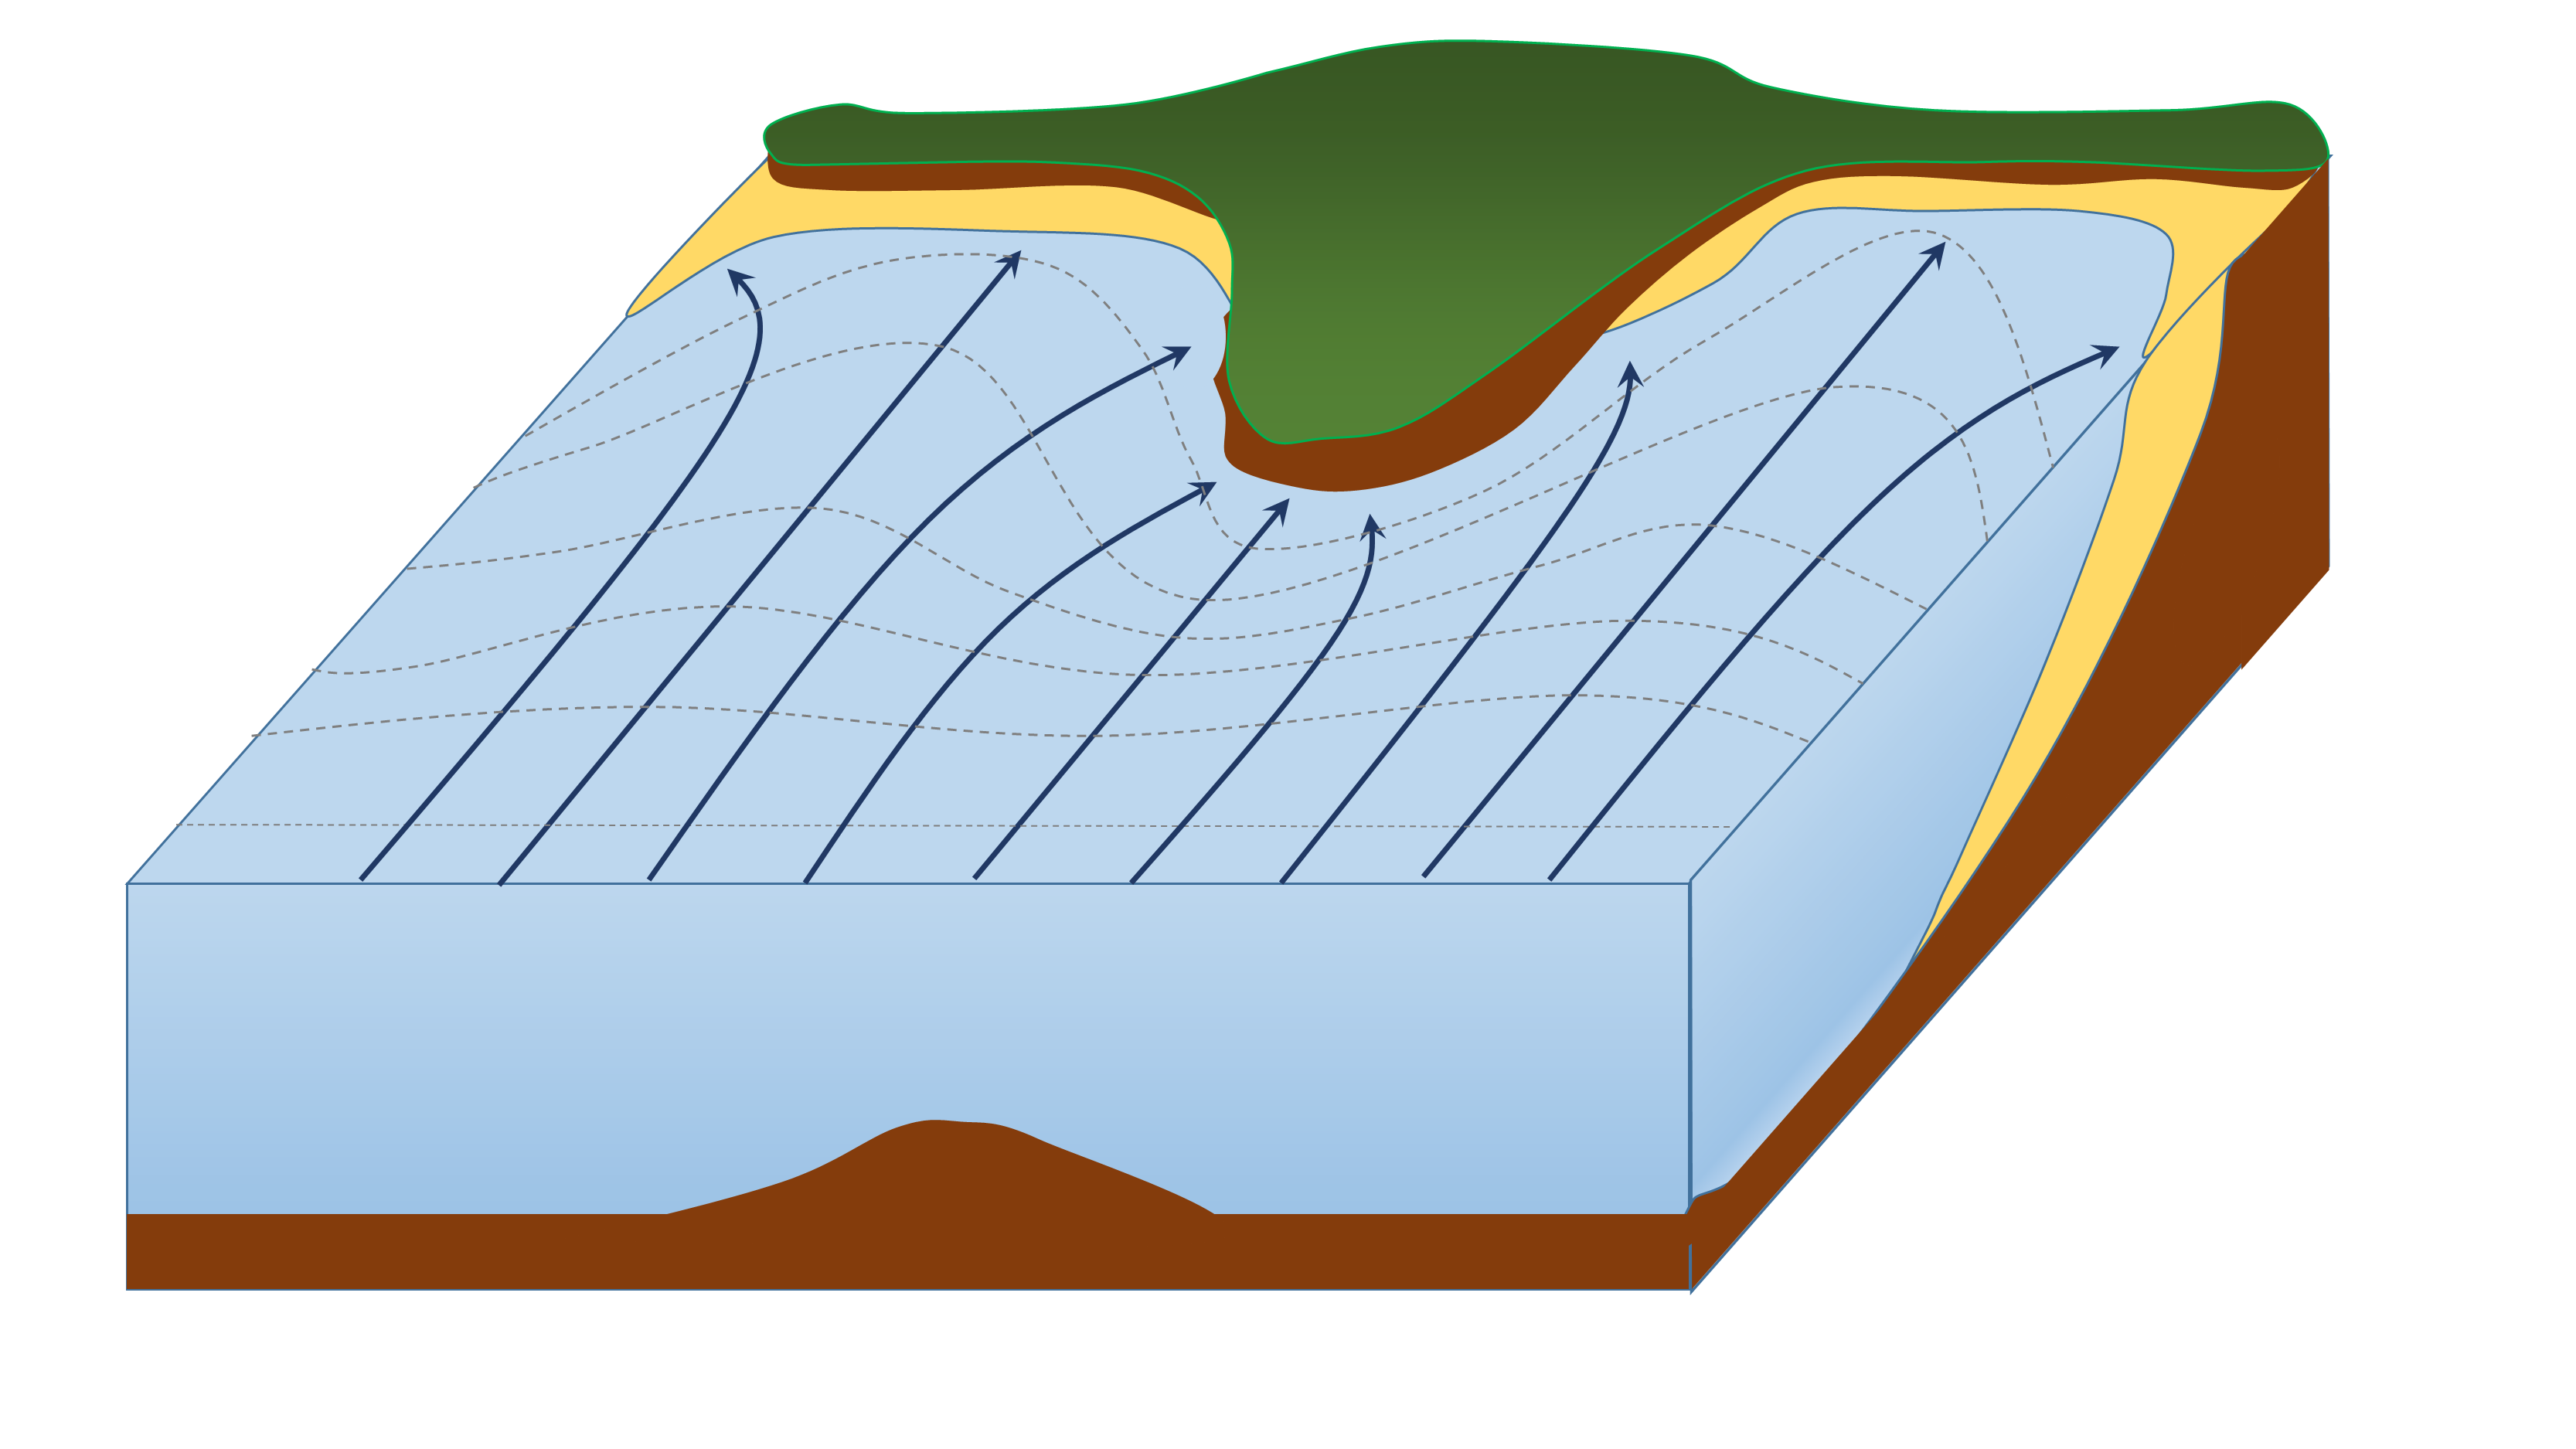 sea erosion diagram